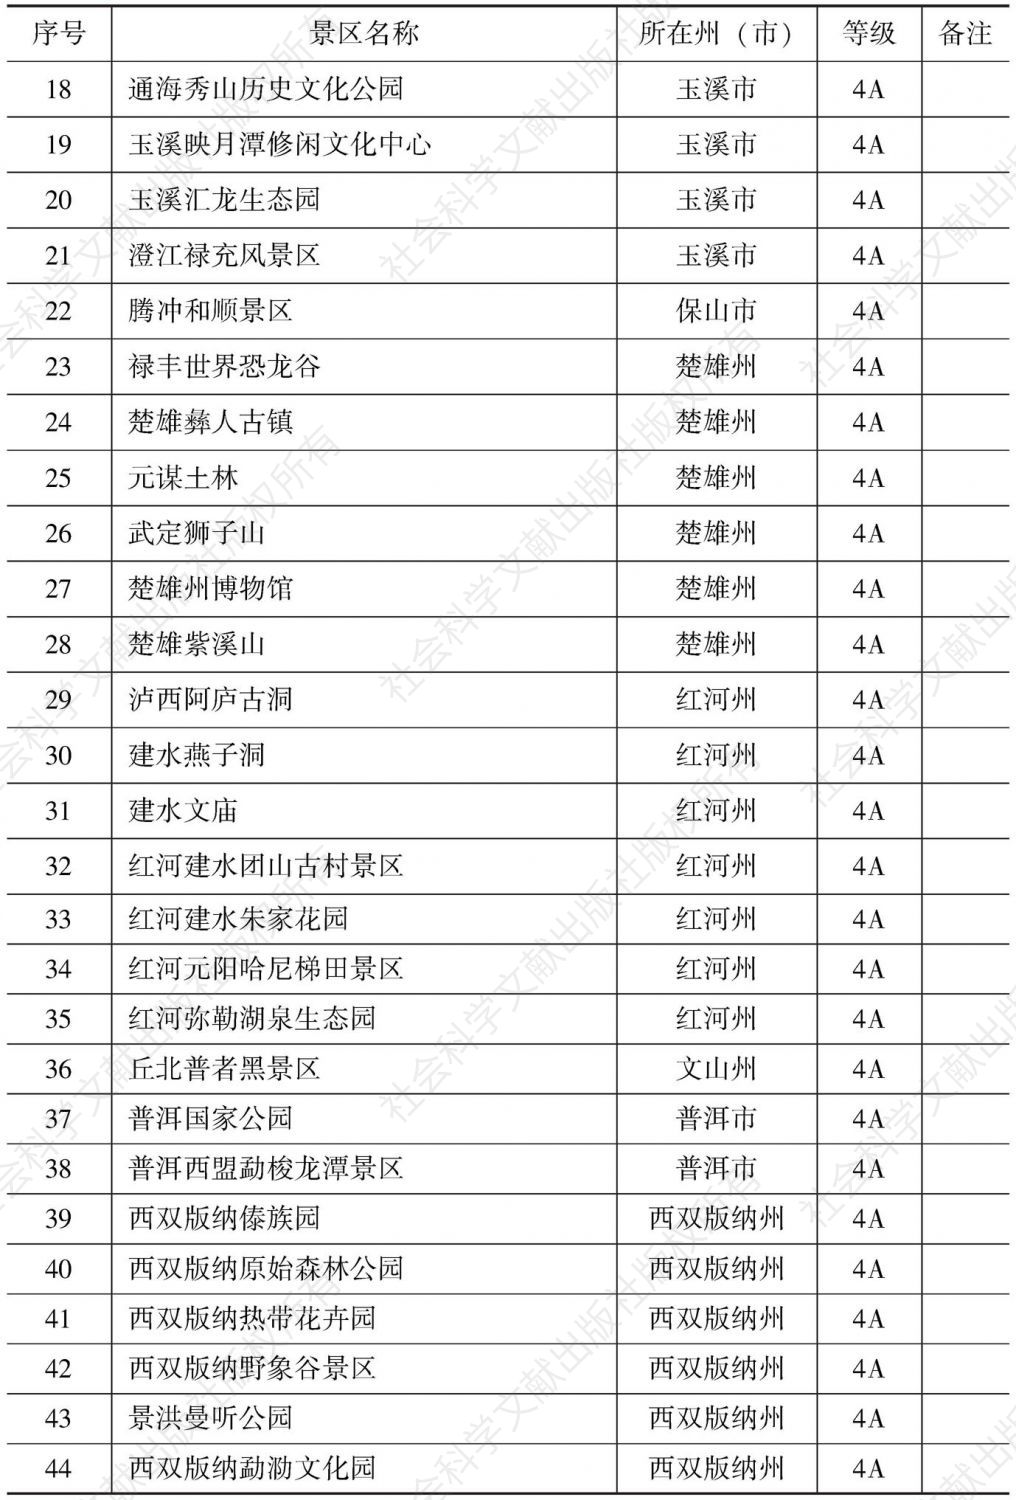 附表2 云南省A级旅游景区名录-续表1